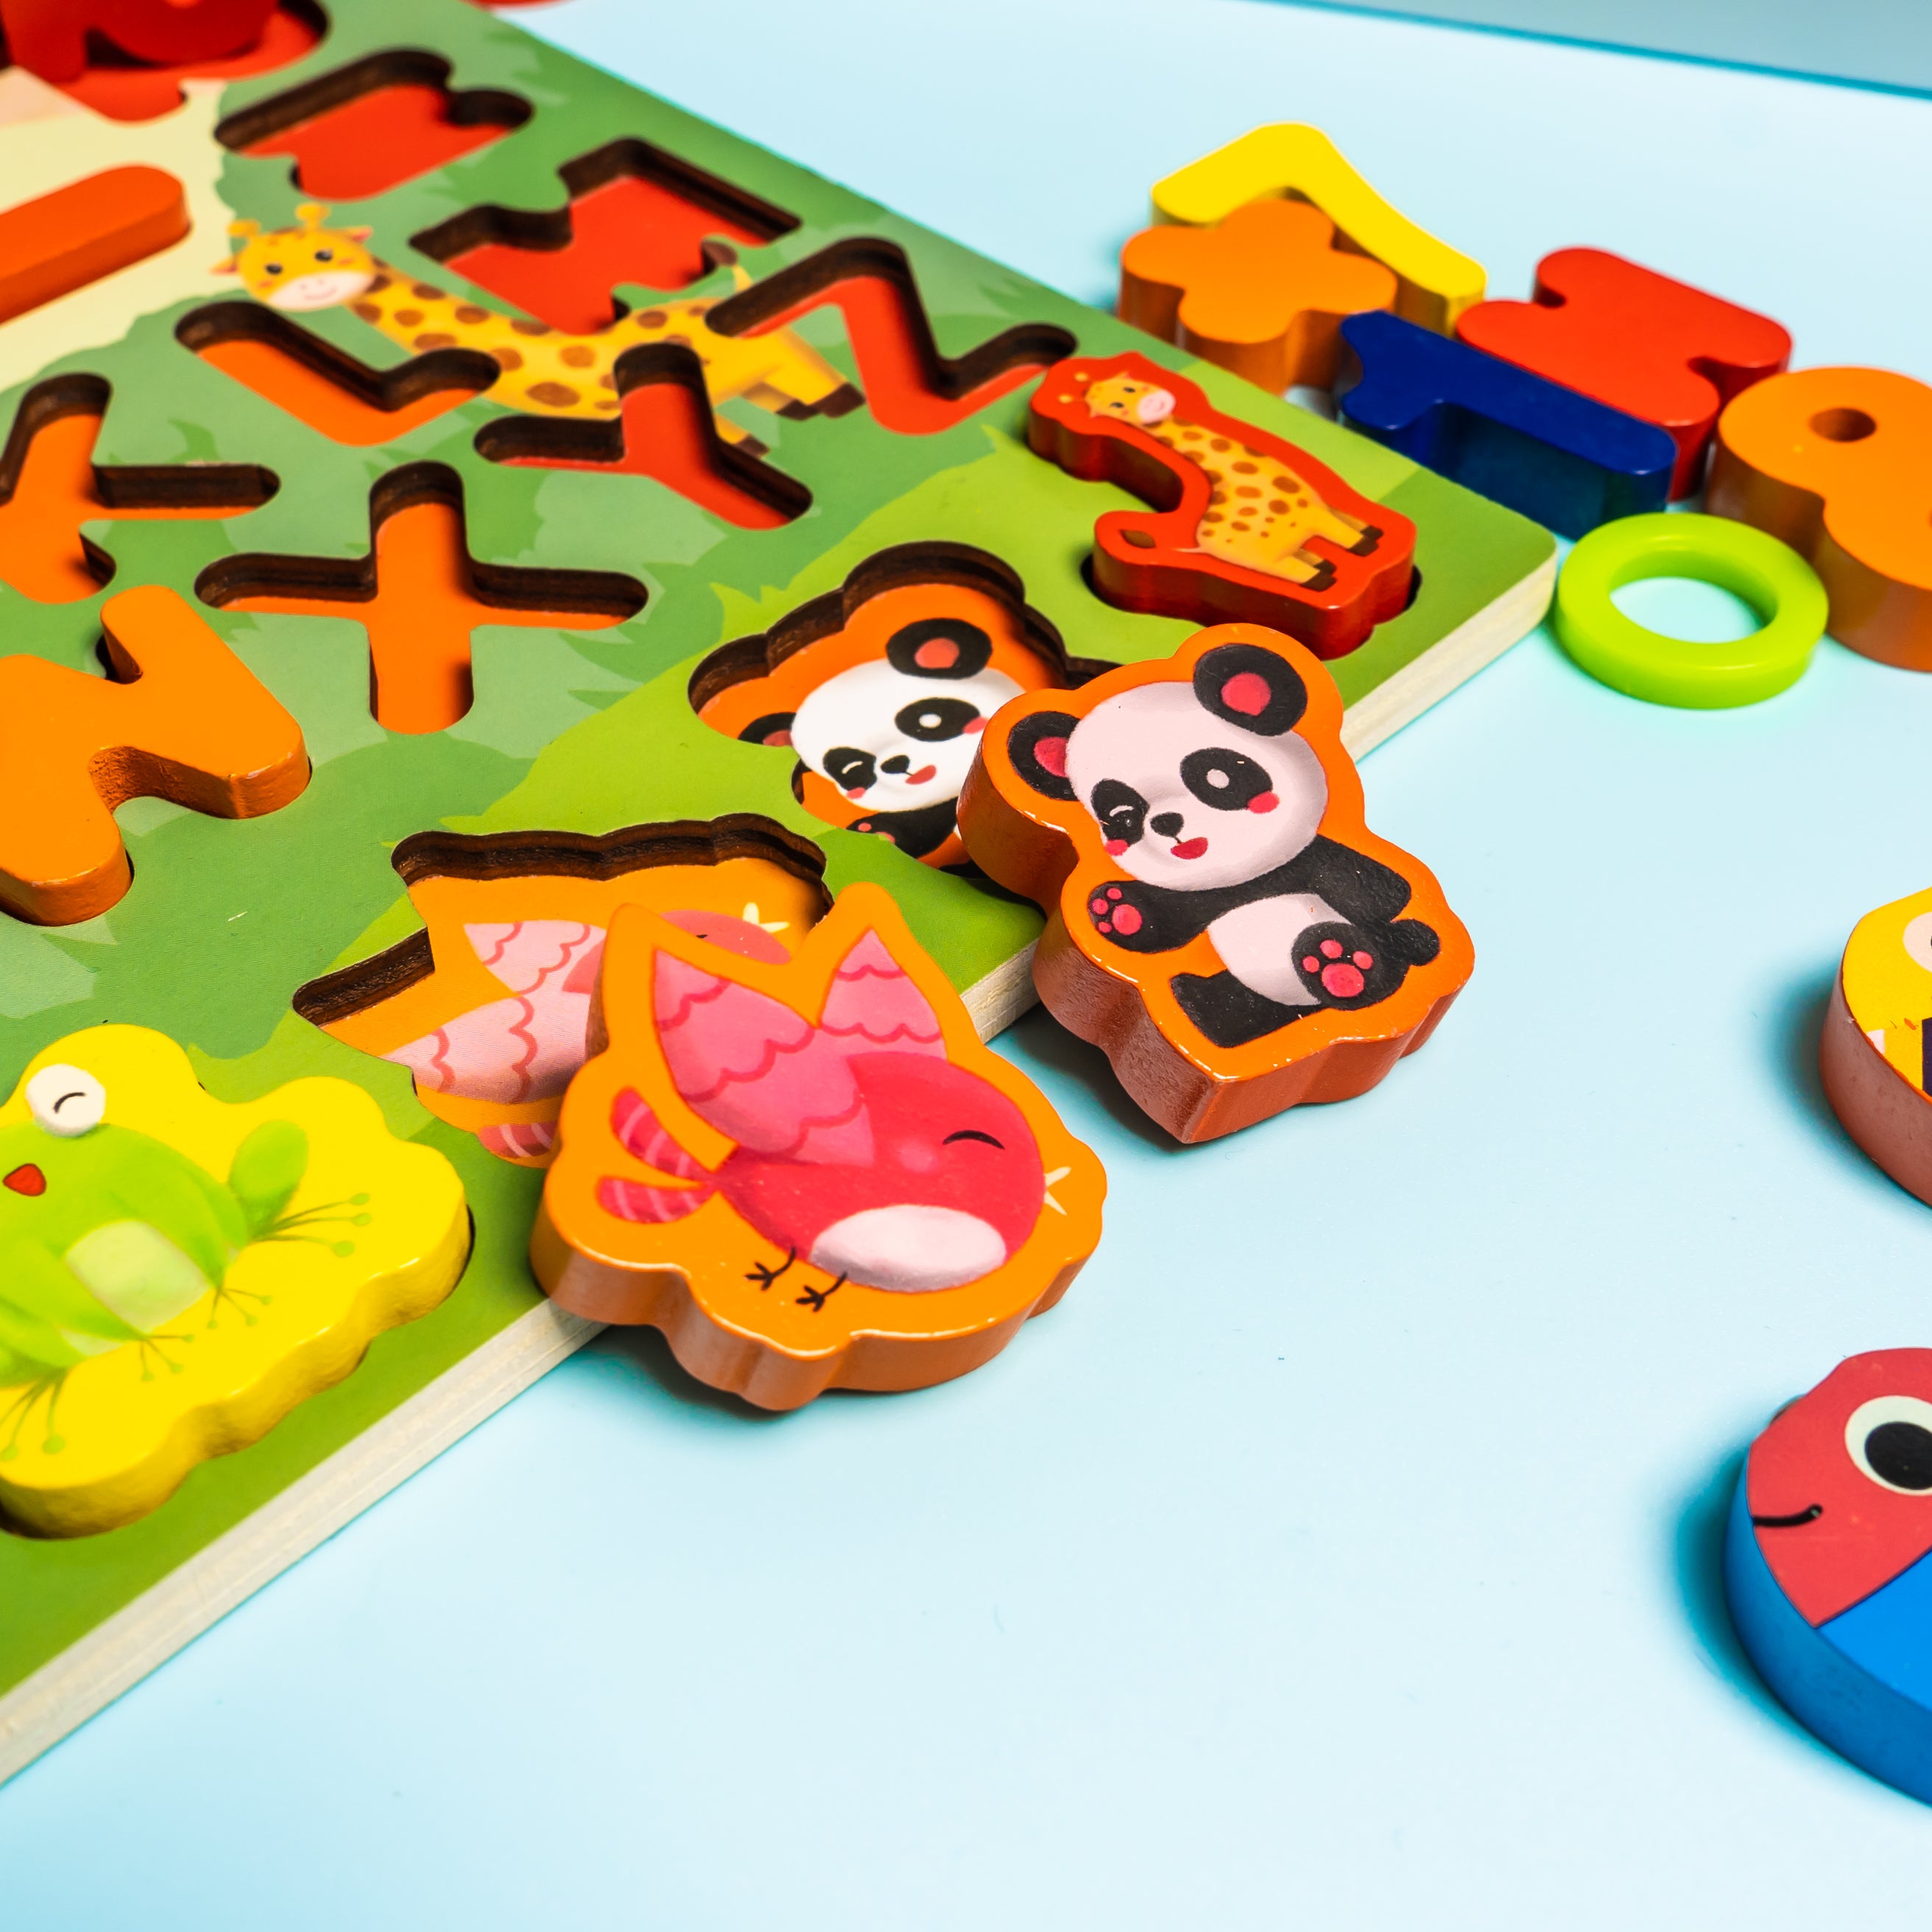 KiddoSpace™ - Wooden Montessori Puzzle